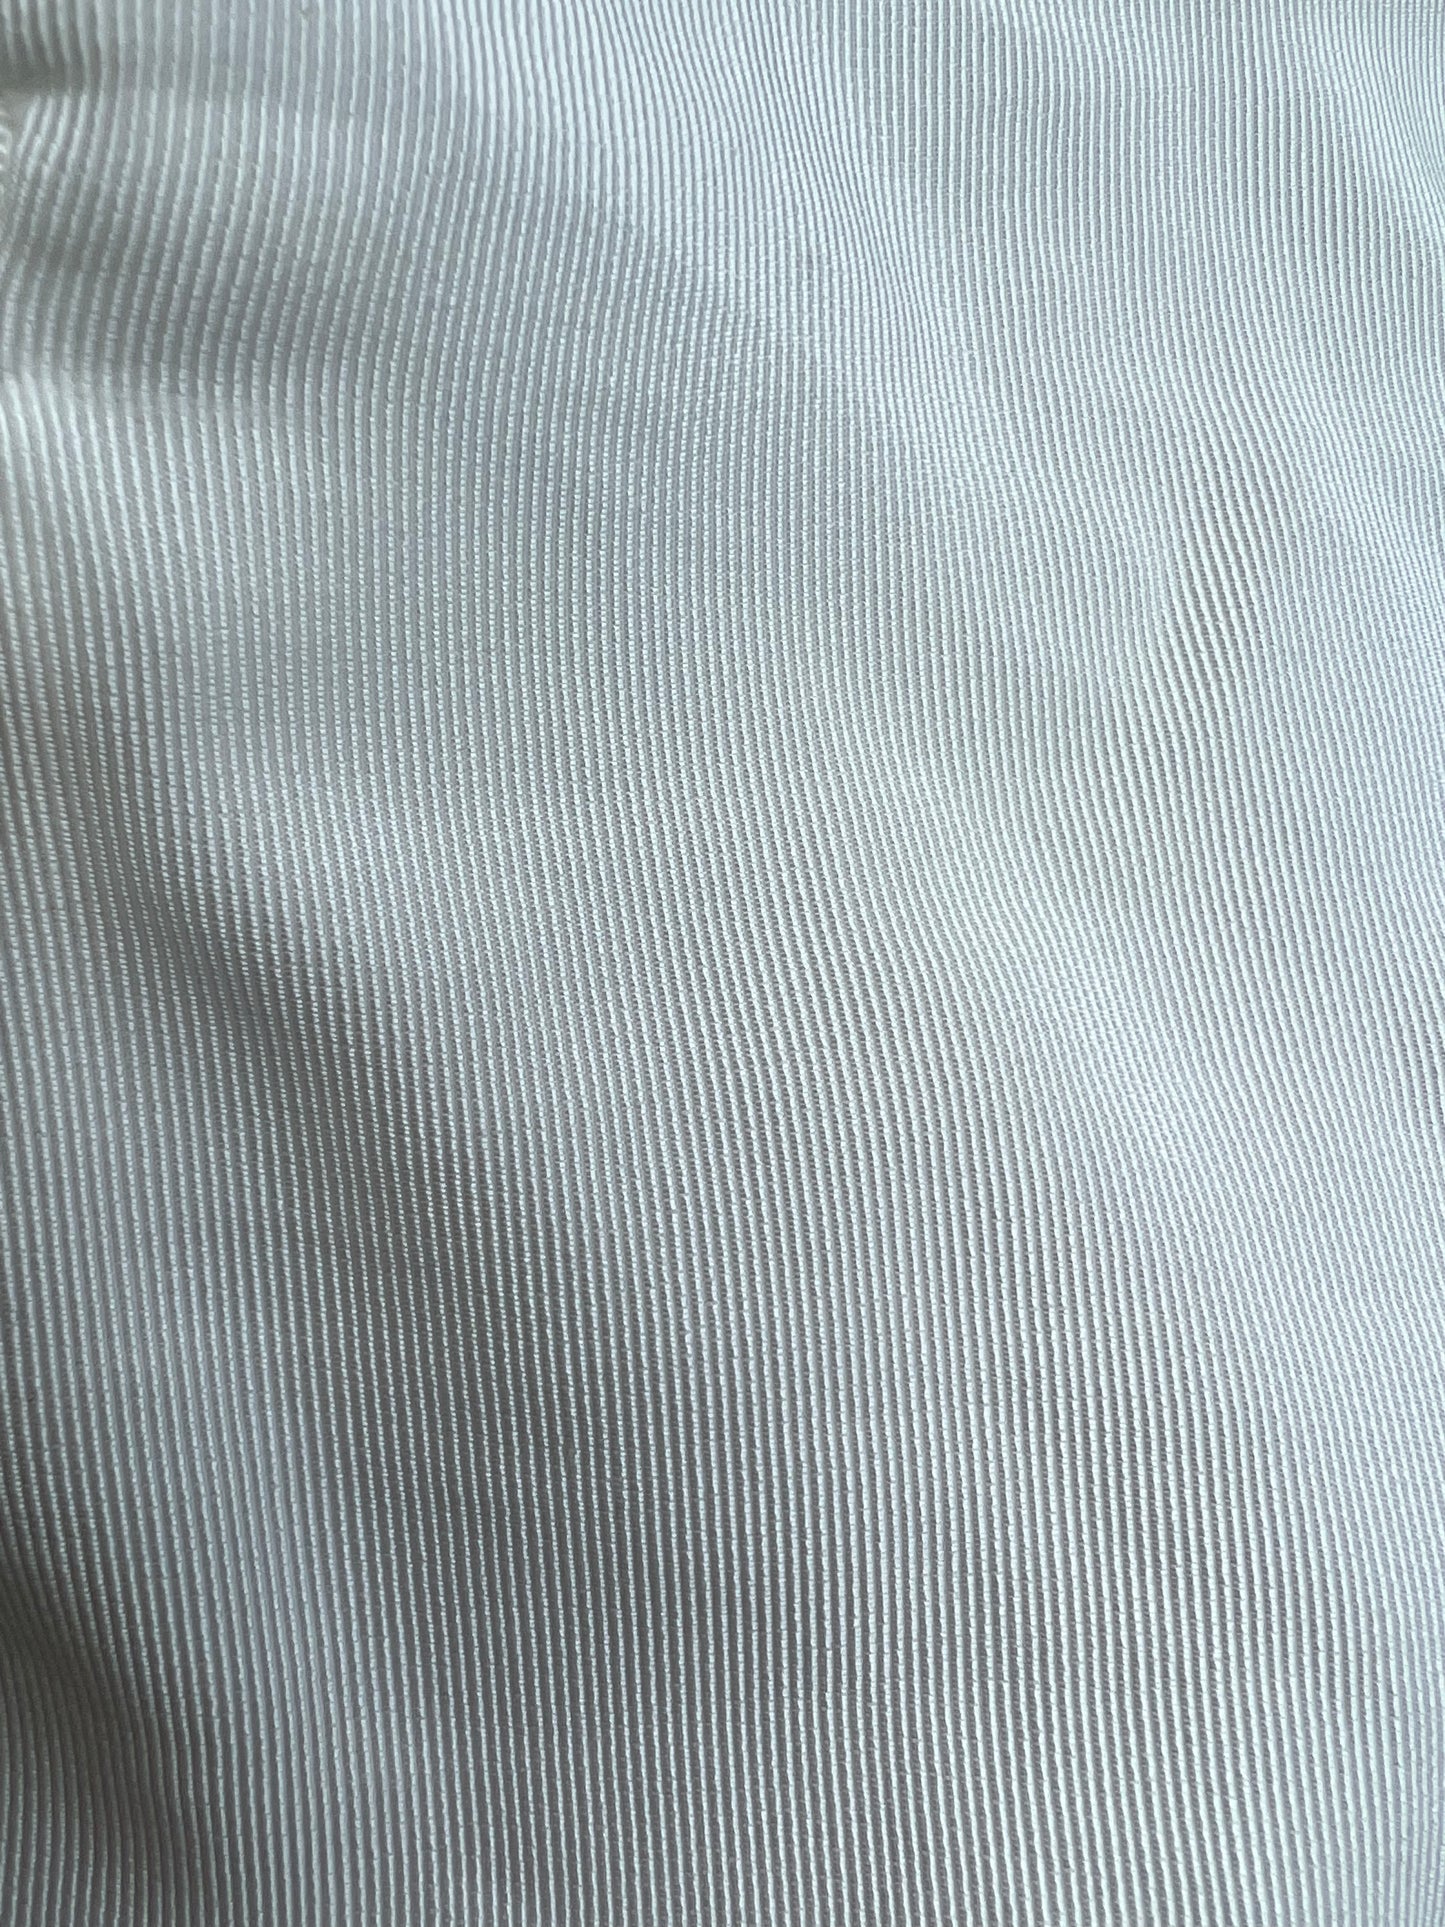 Pin Striped Blazer